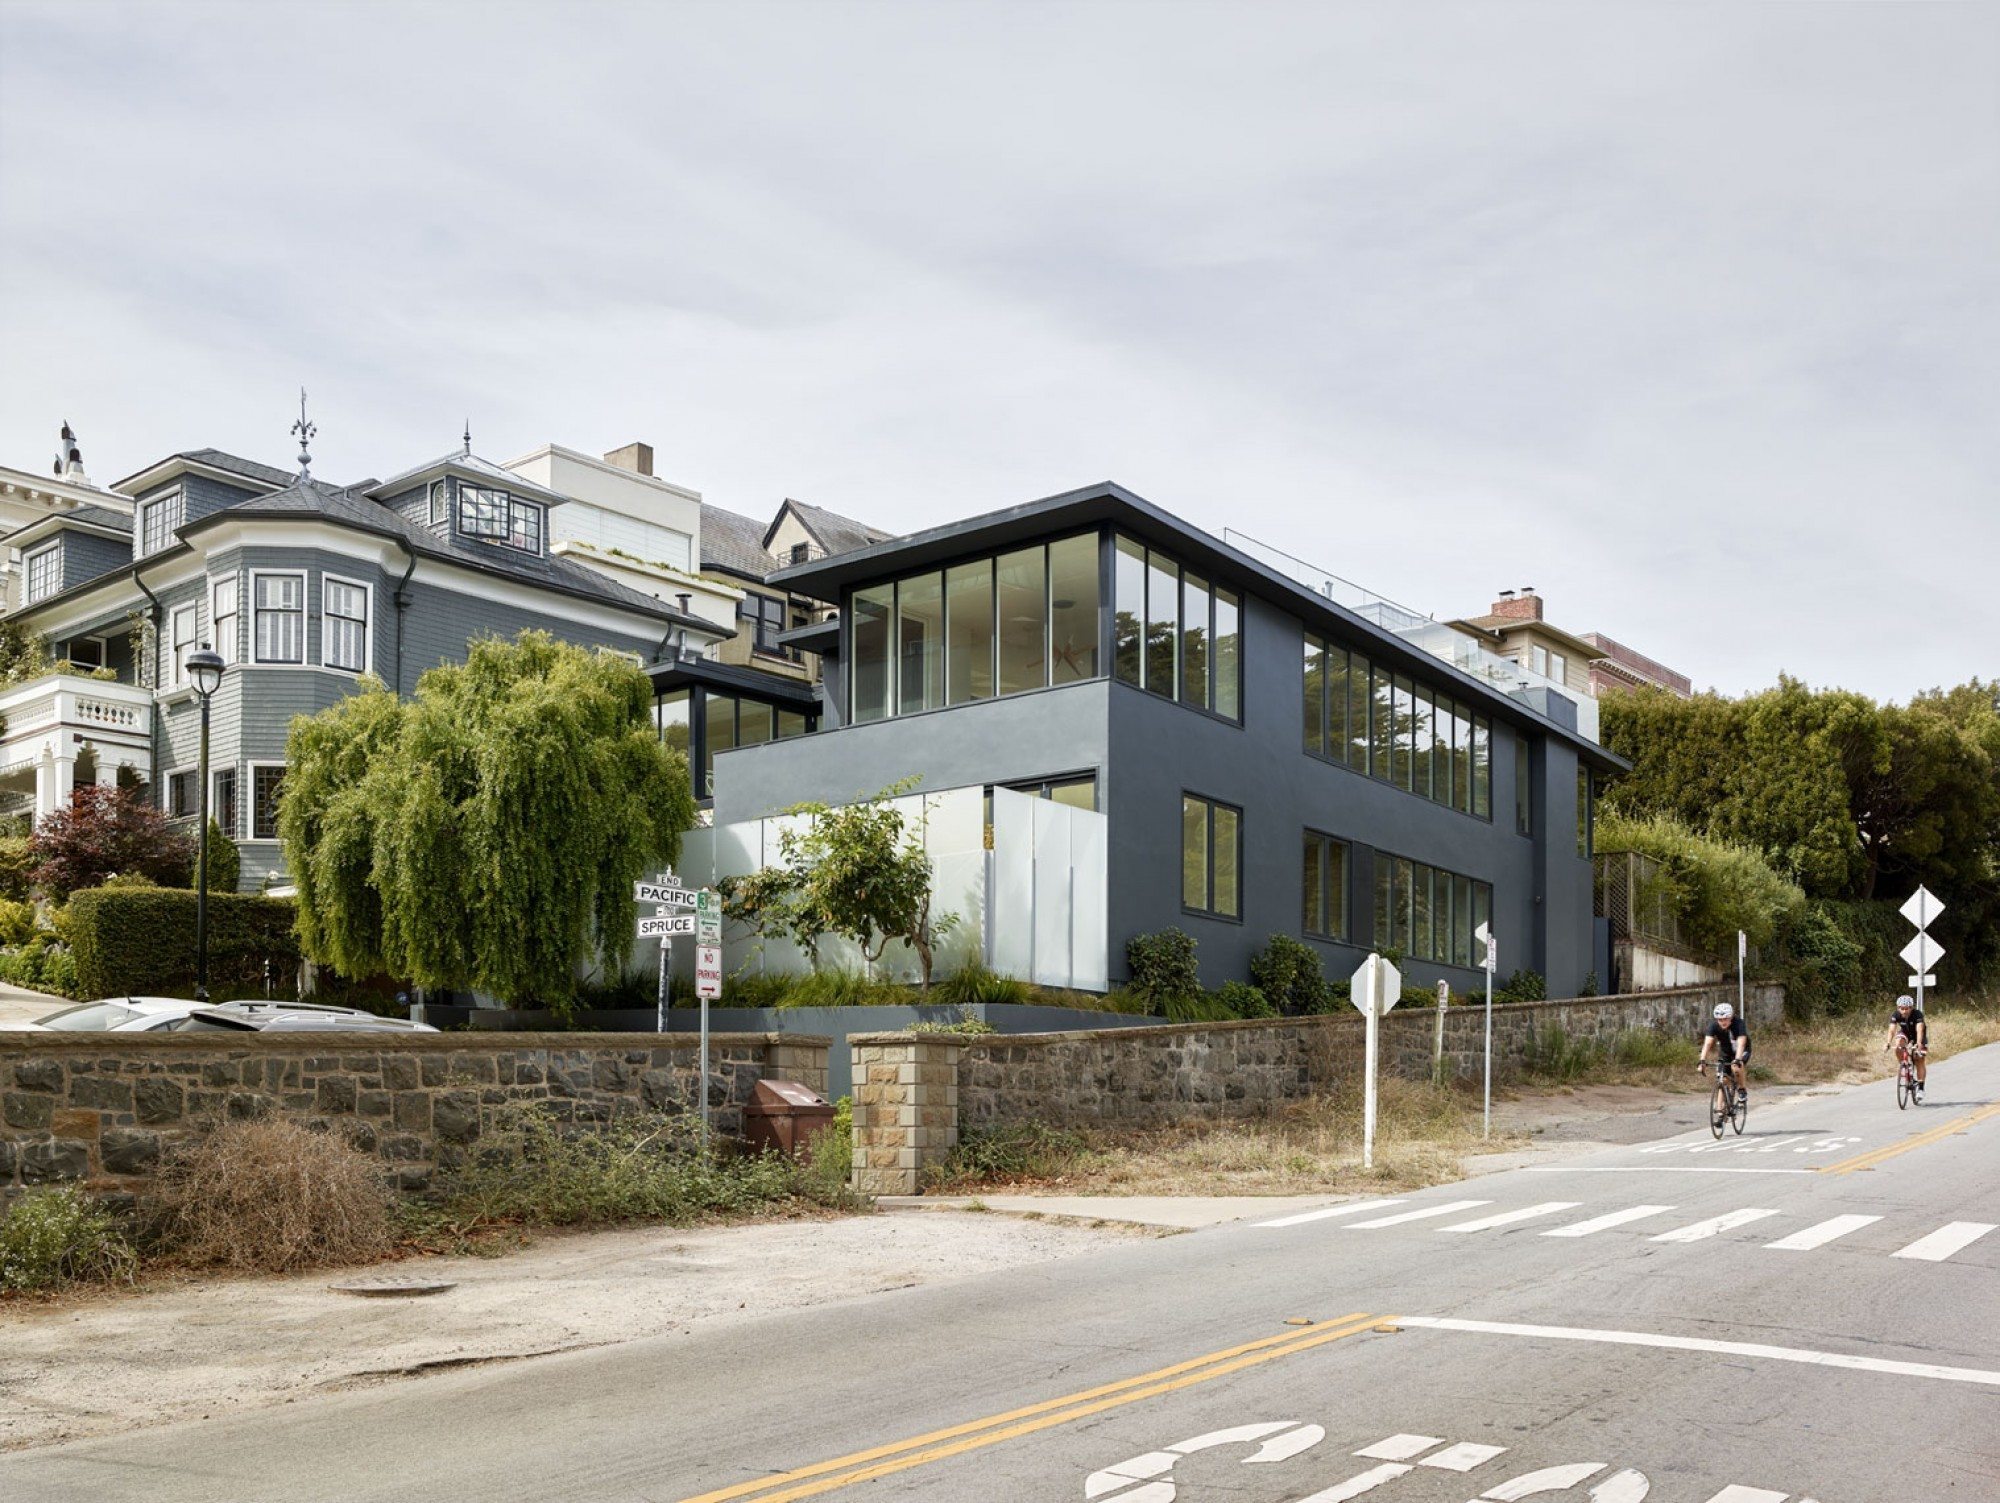 Estilo Contemporâneo em São Francisco por John Maniscalco Architecture